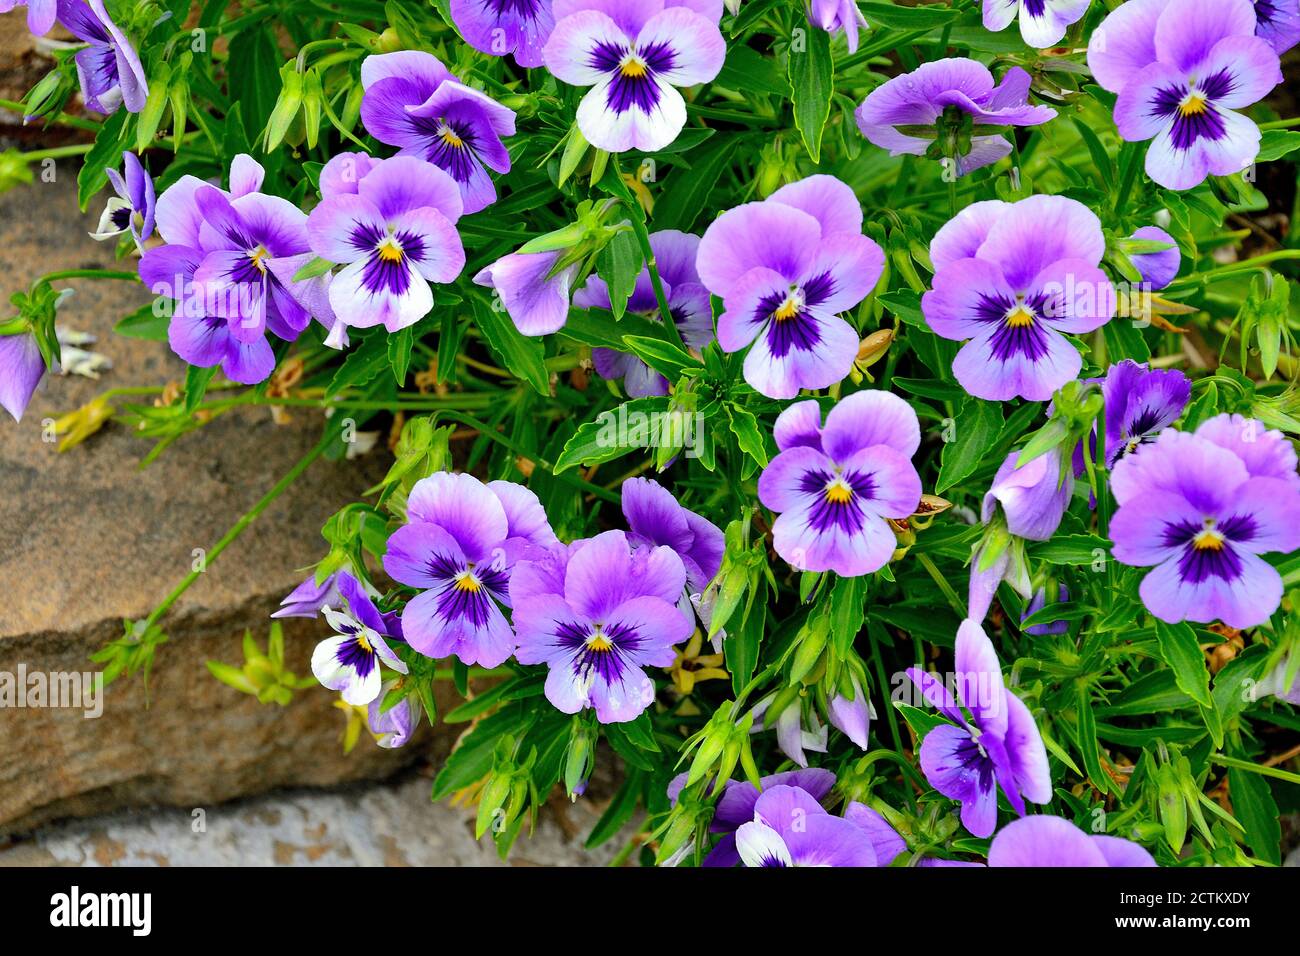 Gros plan de fleurs de pansy colorées dans le jardin. Le nom scientifique des pansies de jardin est Viola wittrockiana. Plante hybride ornementale à pétales violets b Banque D'Images